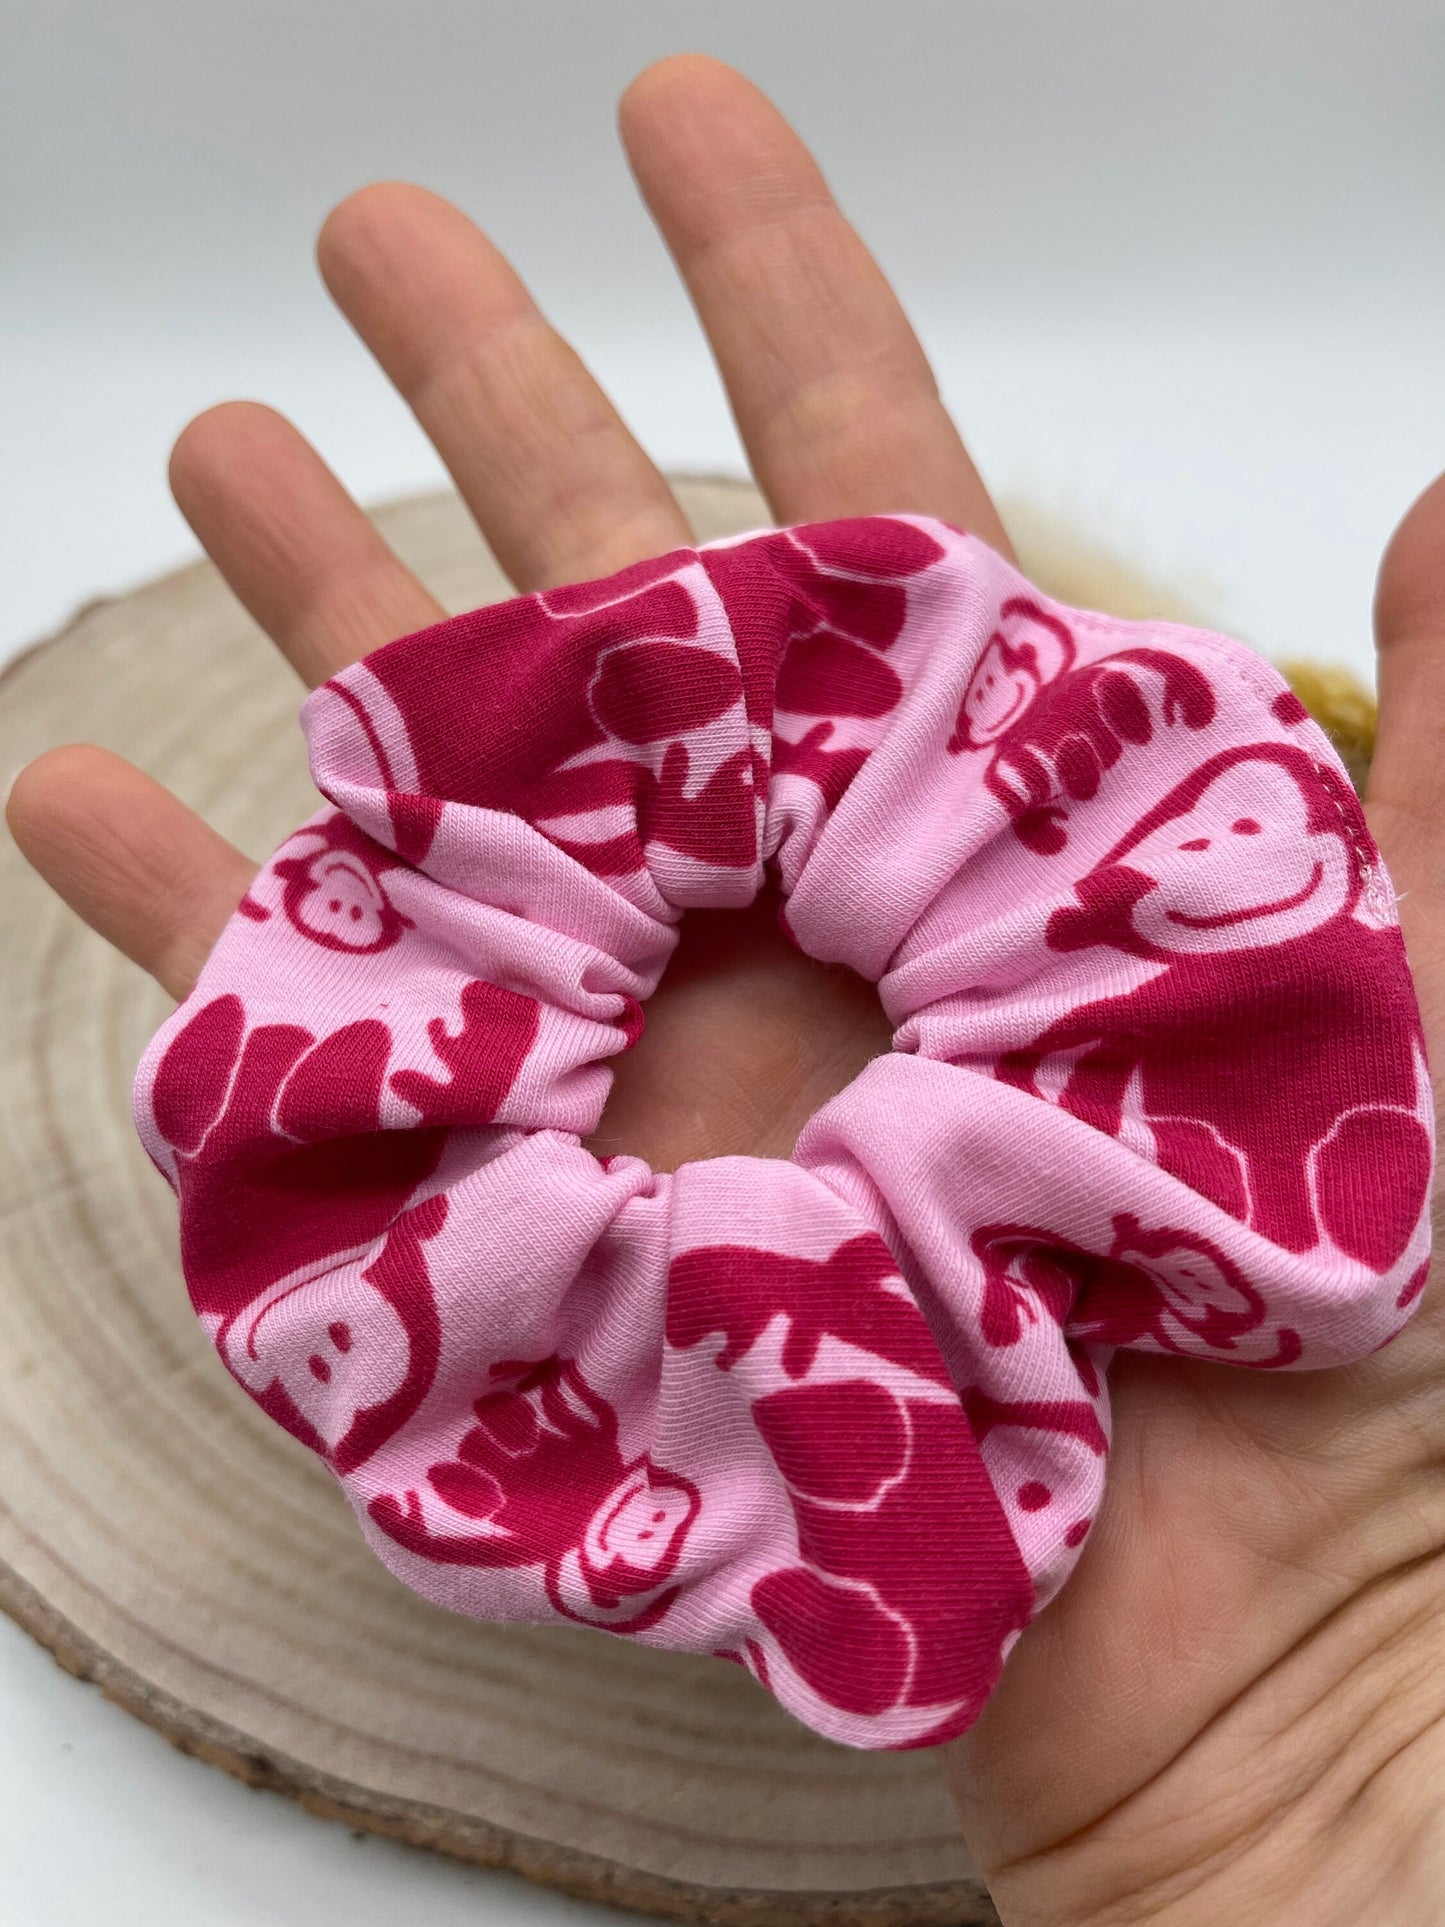 Scrunchie Haargummi elastisches Haarband rosa Affen für feines oder dickes Haar